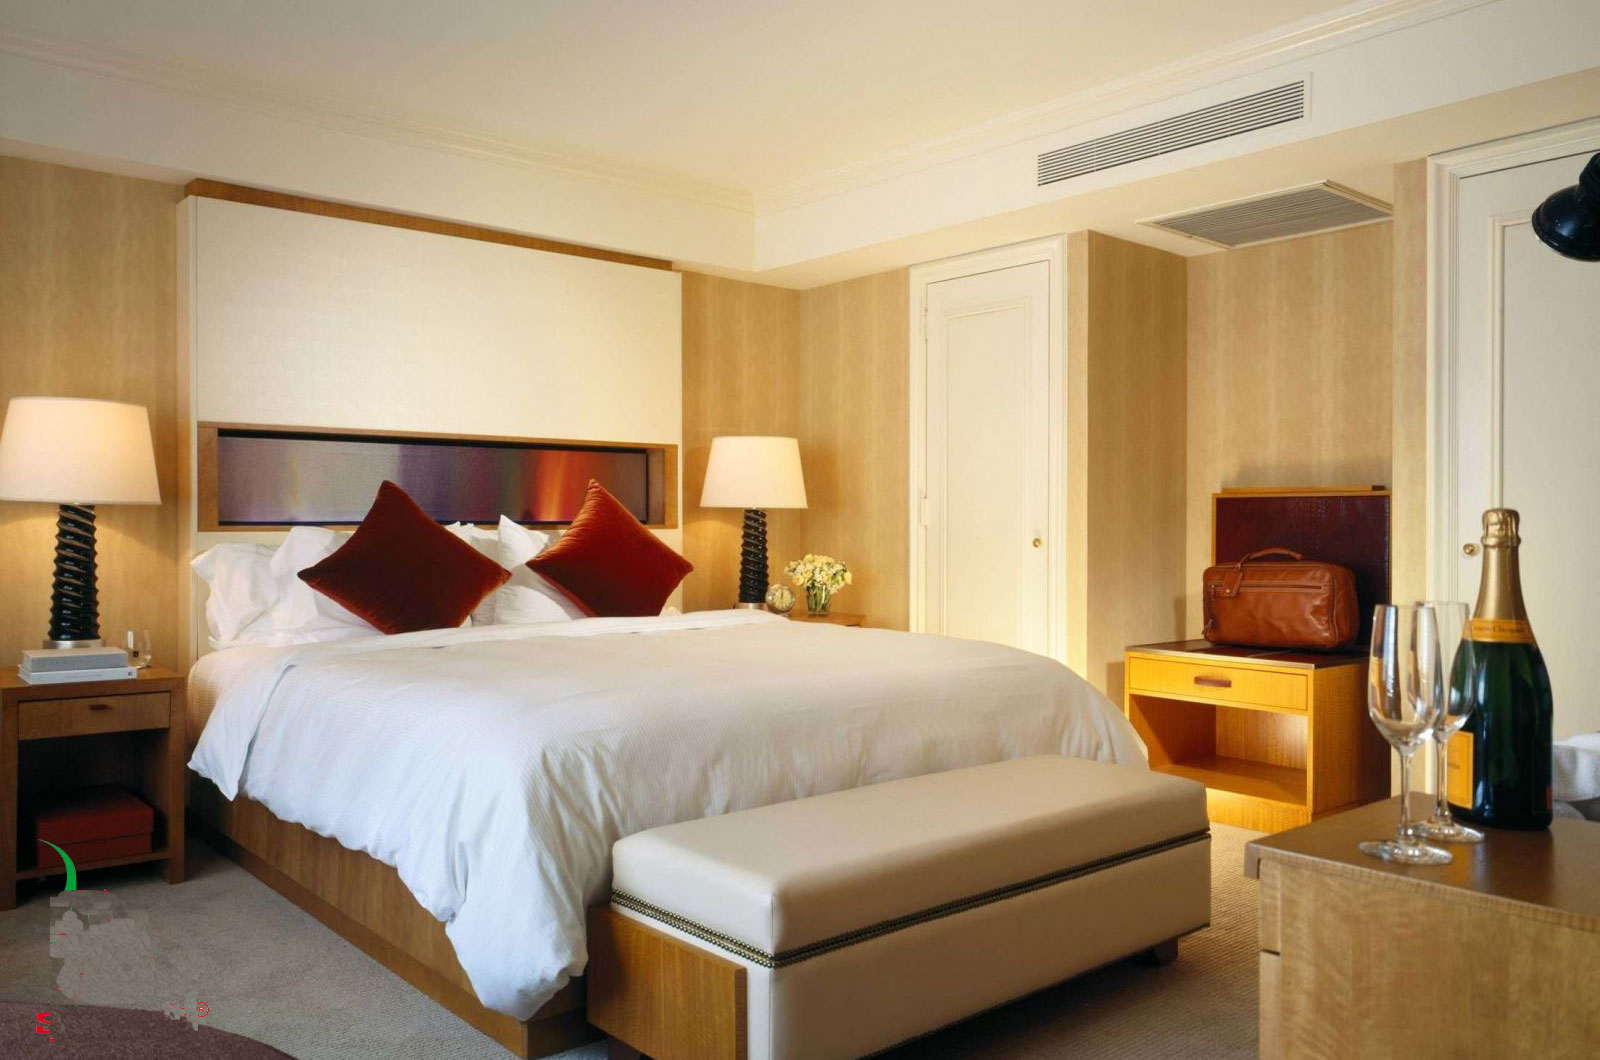  FBA60BVMA9 phù hợp cho những căn phòng ngủ khách sạn cao cấp